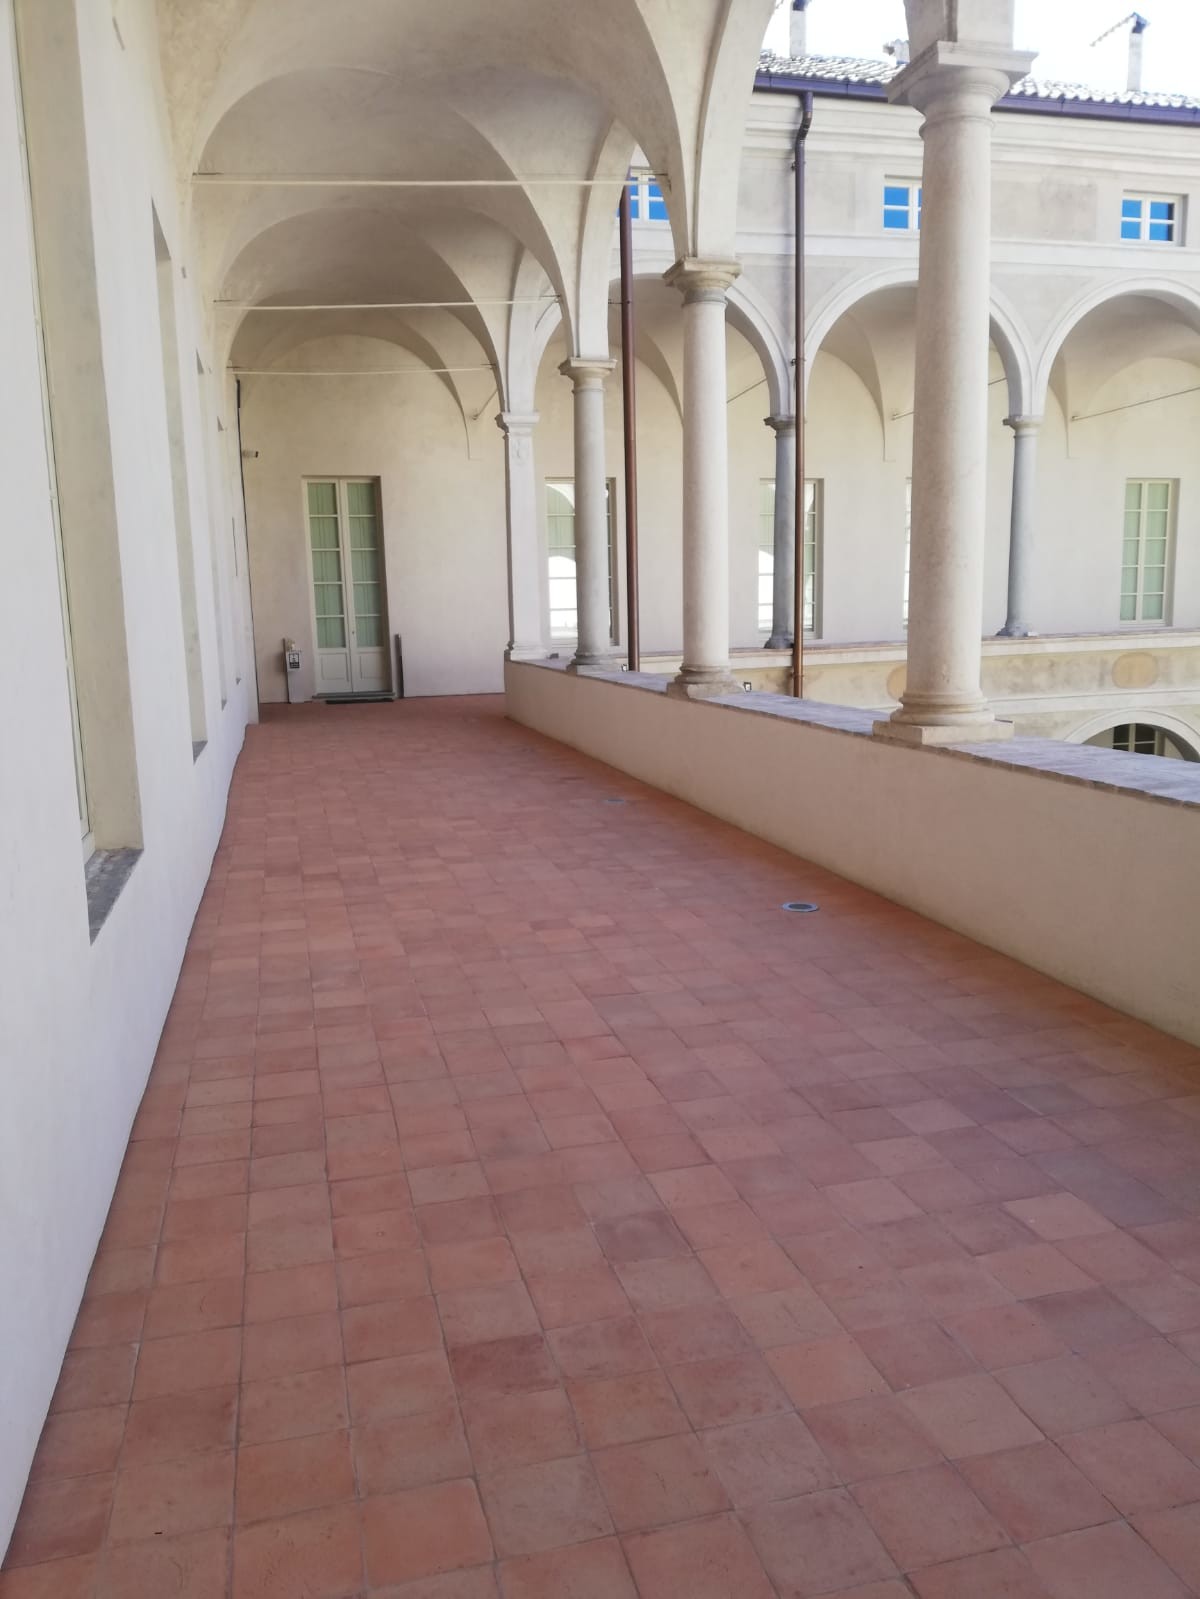 Palazzo Tarasconi a Parma - FornacePolirone